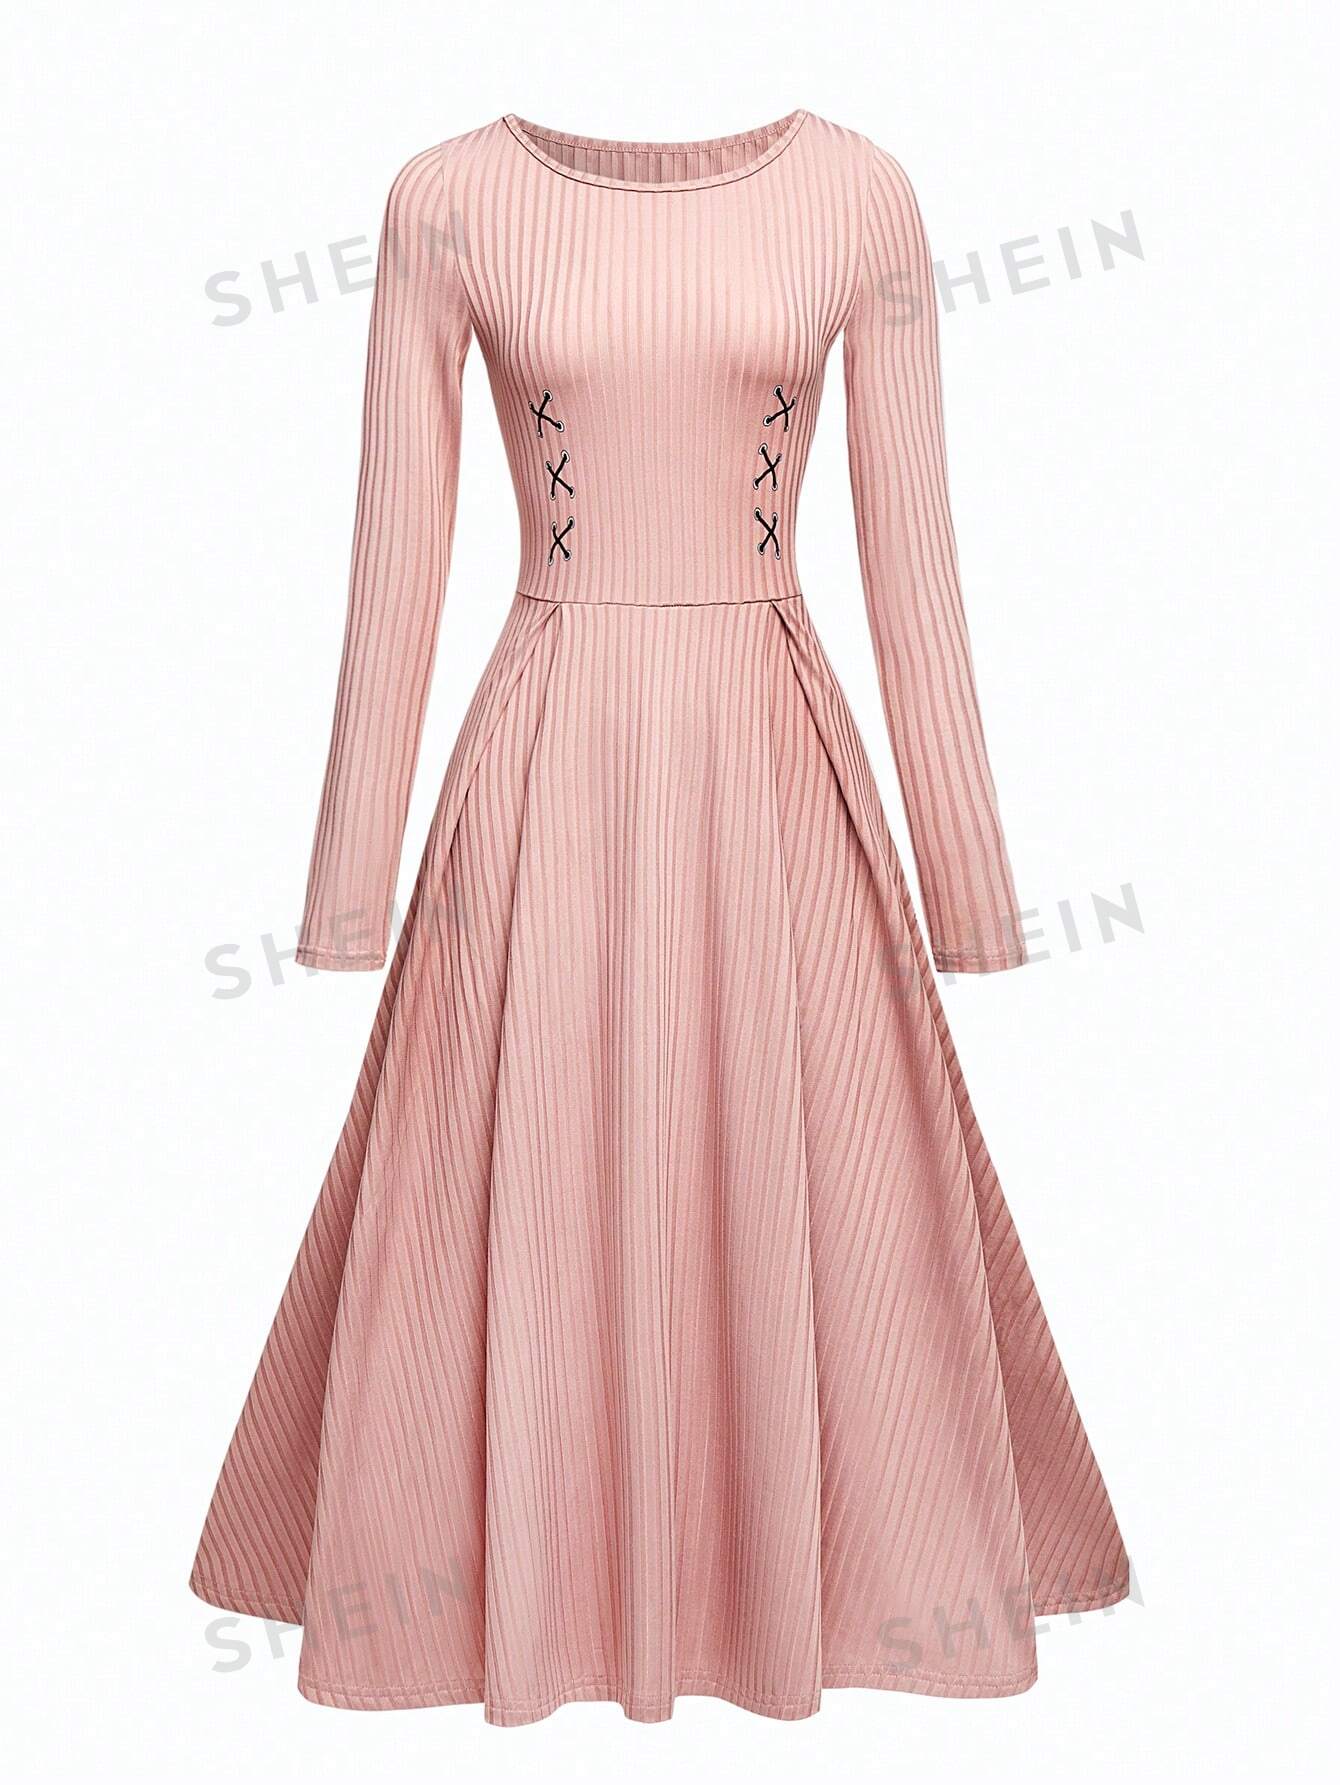 SHEIN Unity женское облегающее платье в рубчик с круглым вырезом и длинными рукавами, пыльный розовый женское блестящее вечернее платье элегантное тюлевое платье цвета шампанского с длинными рукавами и глубоким круглым вырезом бальное лет